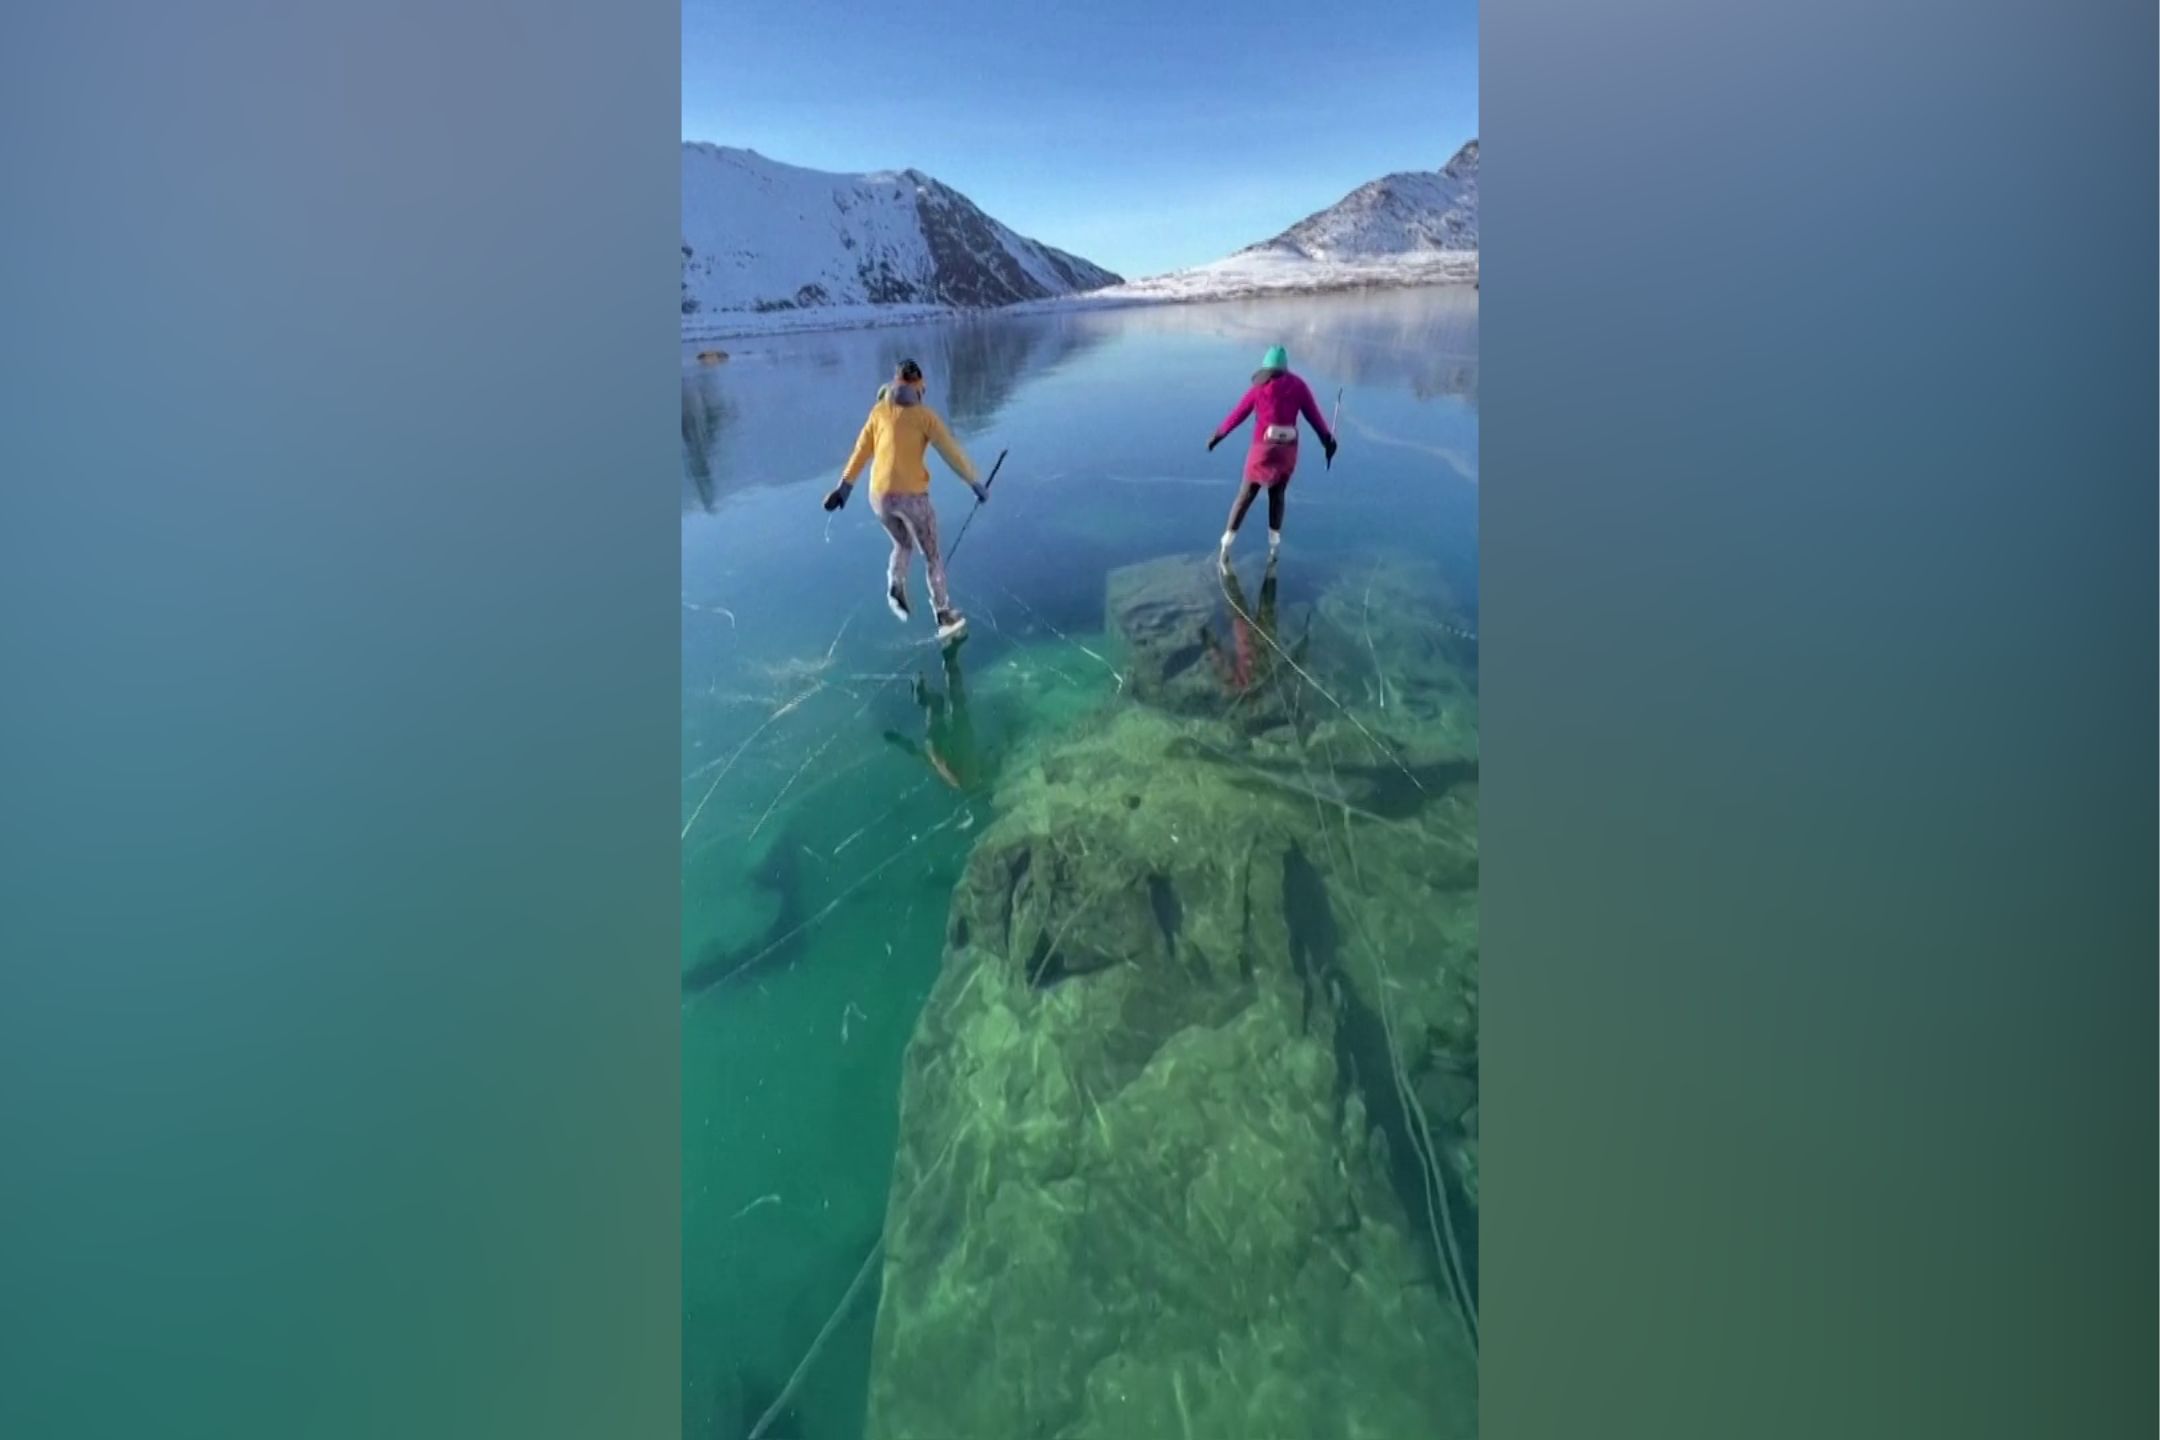 【附视频】寒冷干燥交加湖面结冰  十年一见美景引溜冰潮